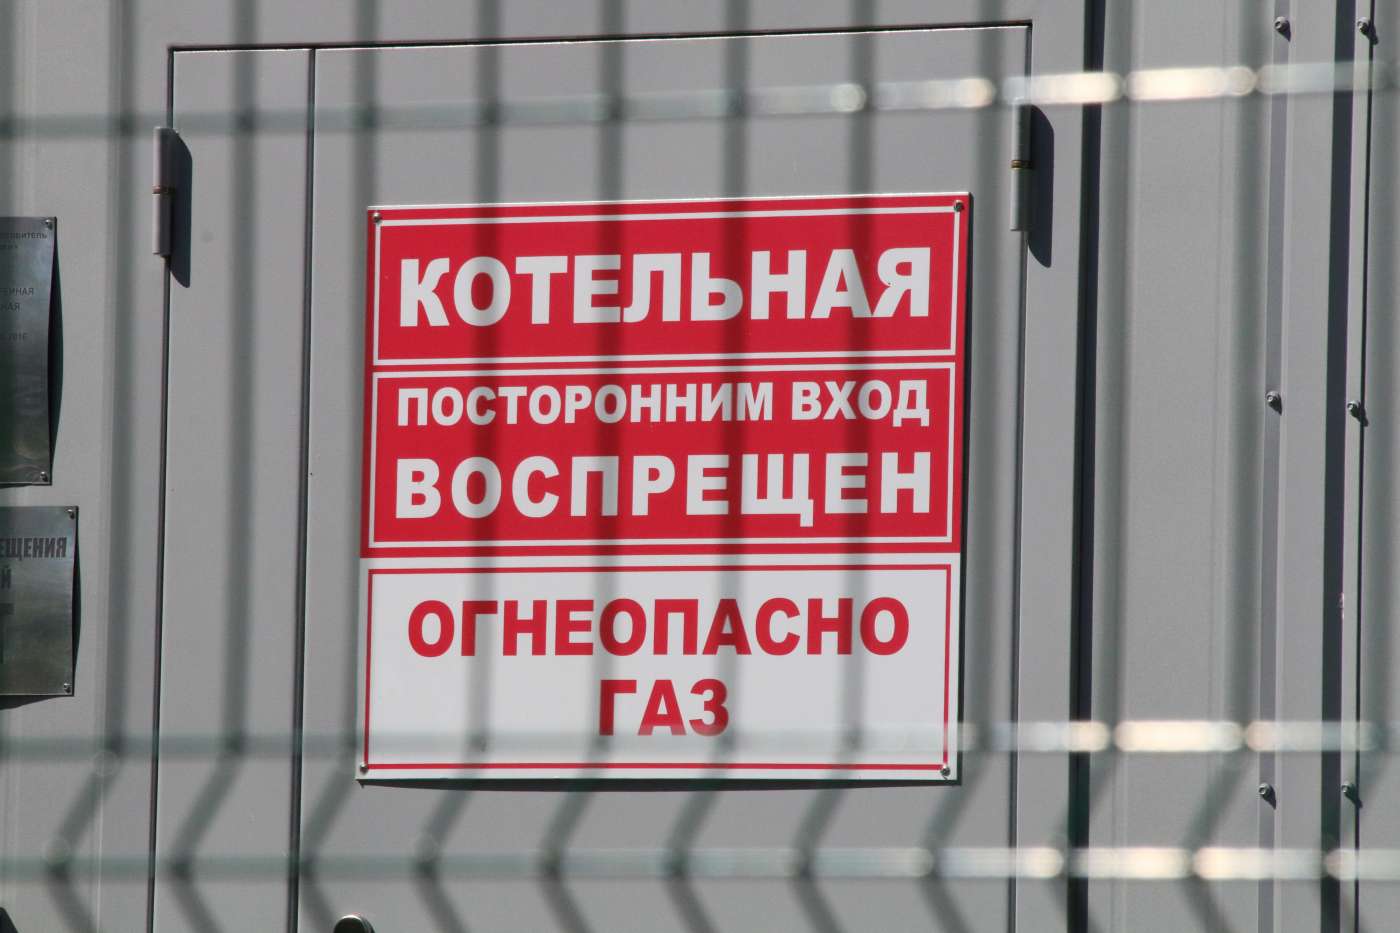 Дело на 117 миллионов рублей: суд отклонил ходатайство администрации Котовска о возврате денег Фонда ЖКХ